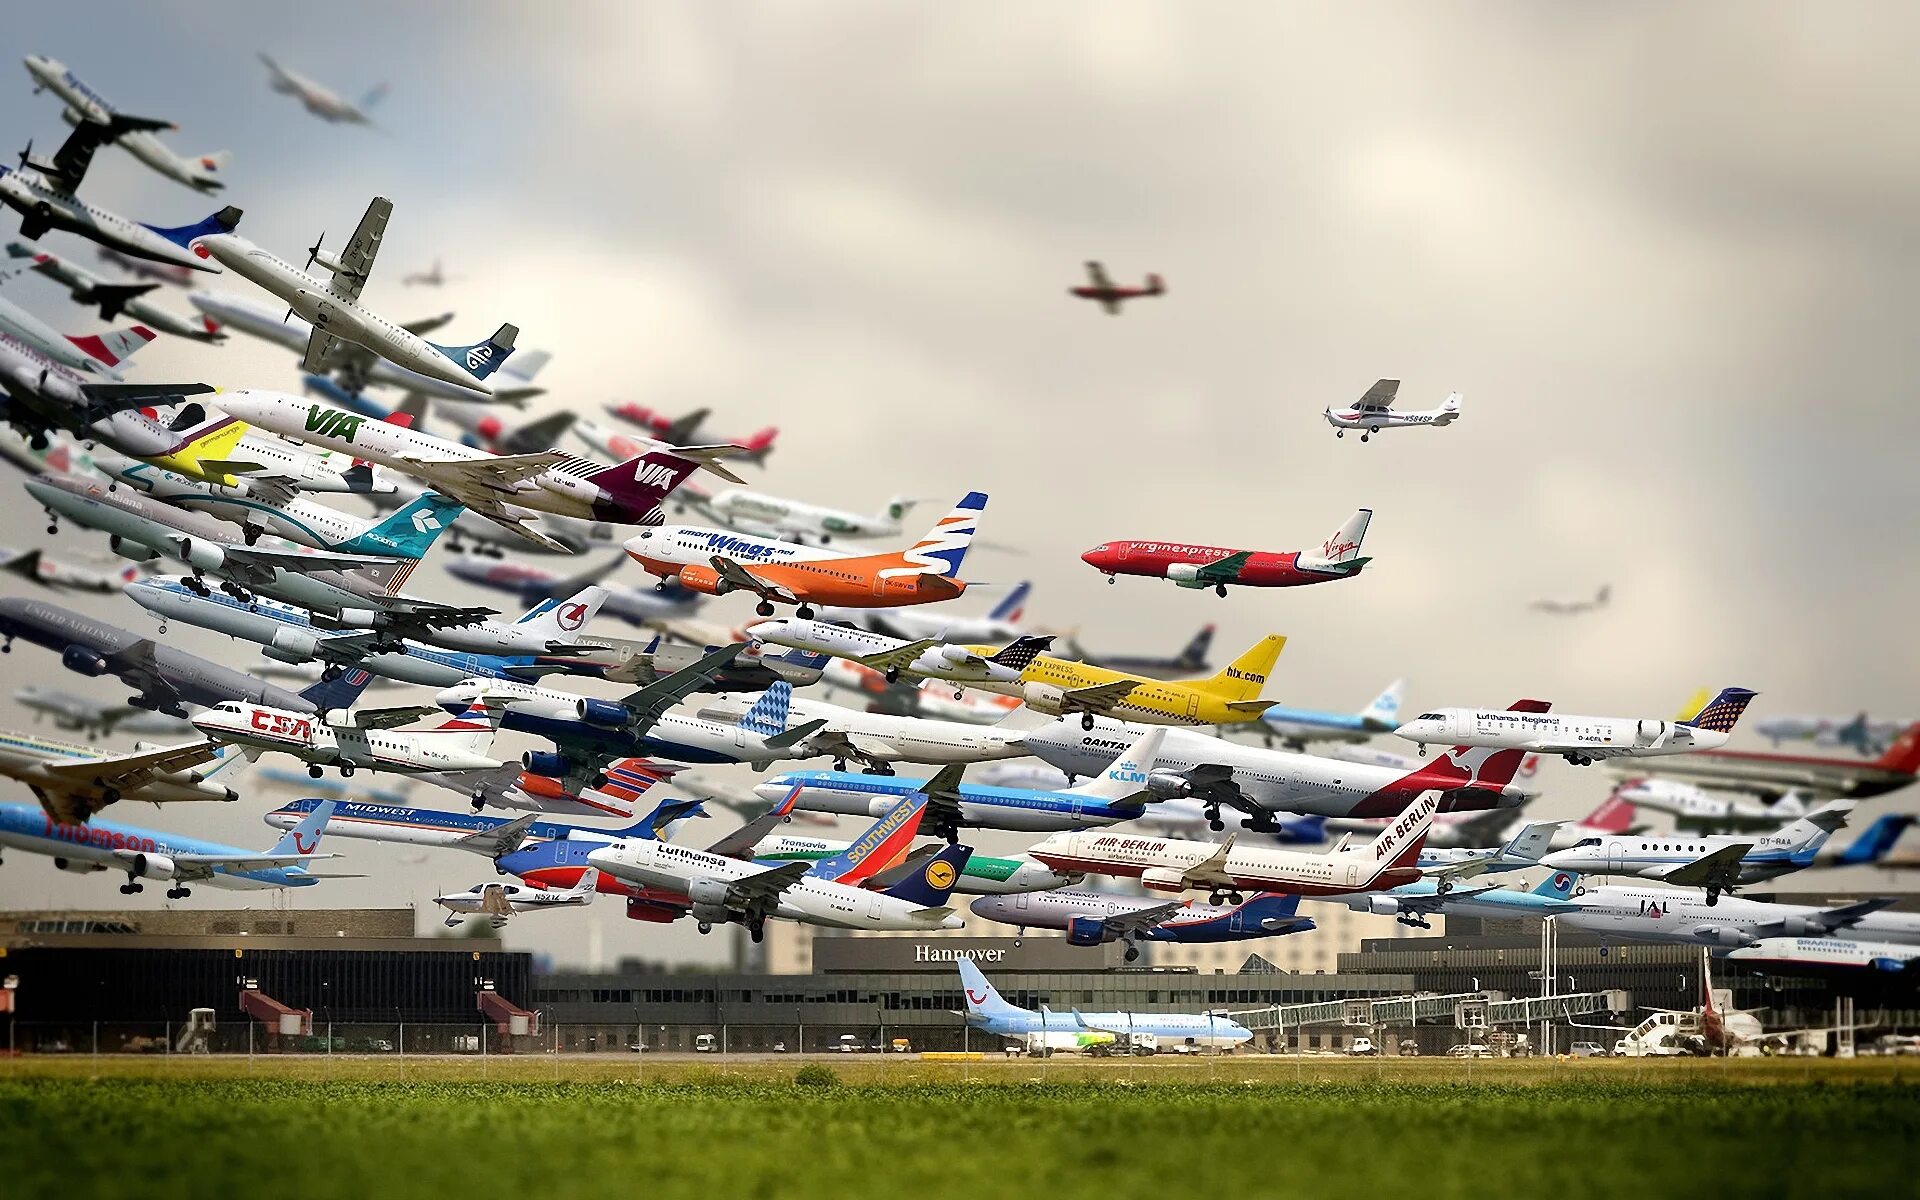 Много самолетов. Самолет и аэропорт. Самолет фото. Много взлетающих самолетов. Полетим все на месте